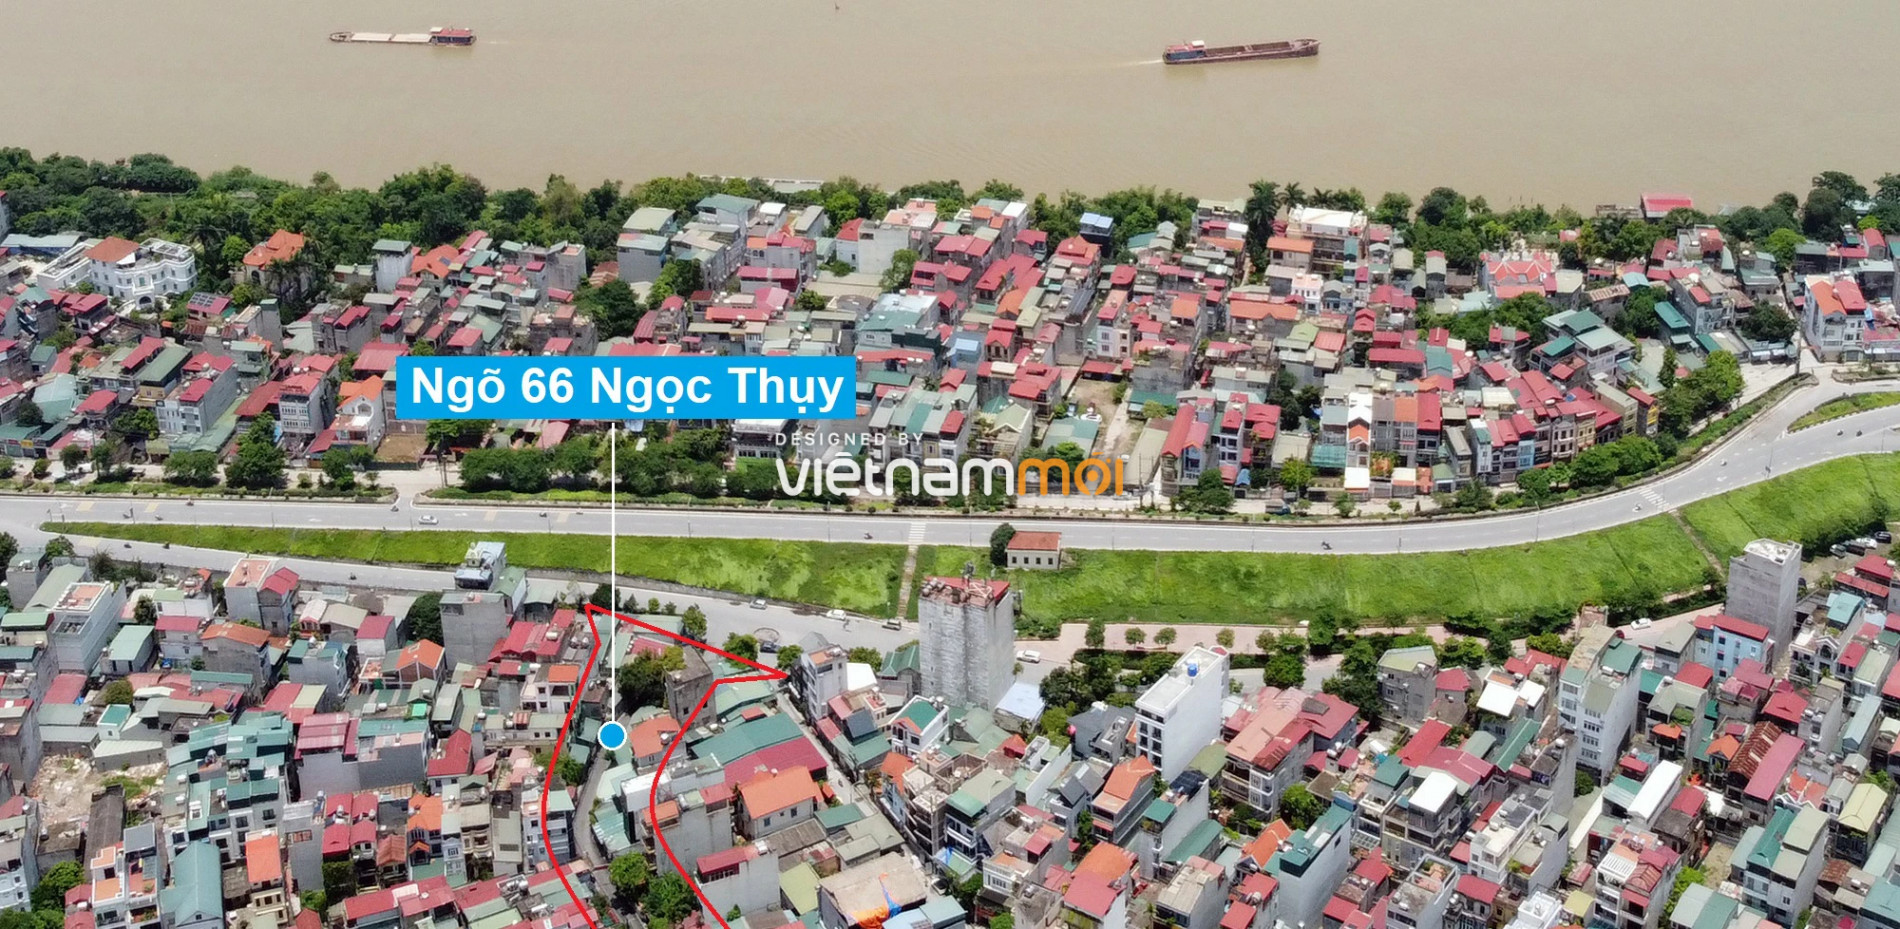 Những khu đất sắp thu hồi để mở đường ở phường Ngọc Thụy, Long Biên, Hà Nội (phần 4) - Ảnh 11.